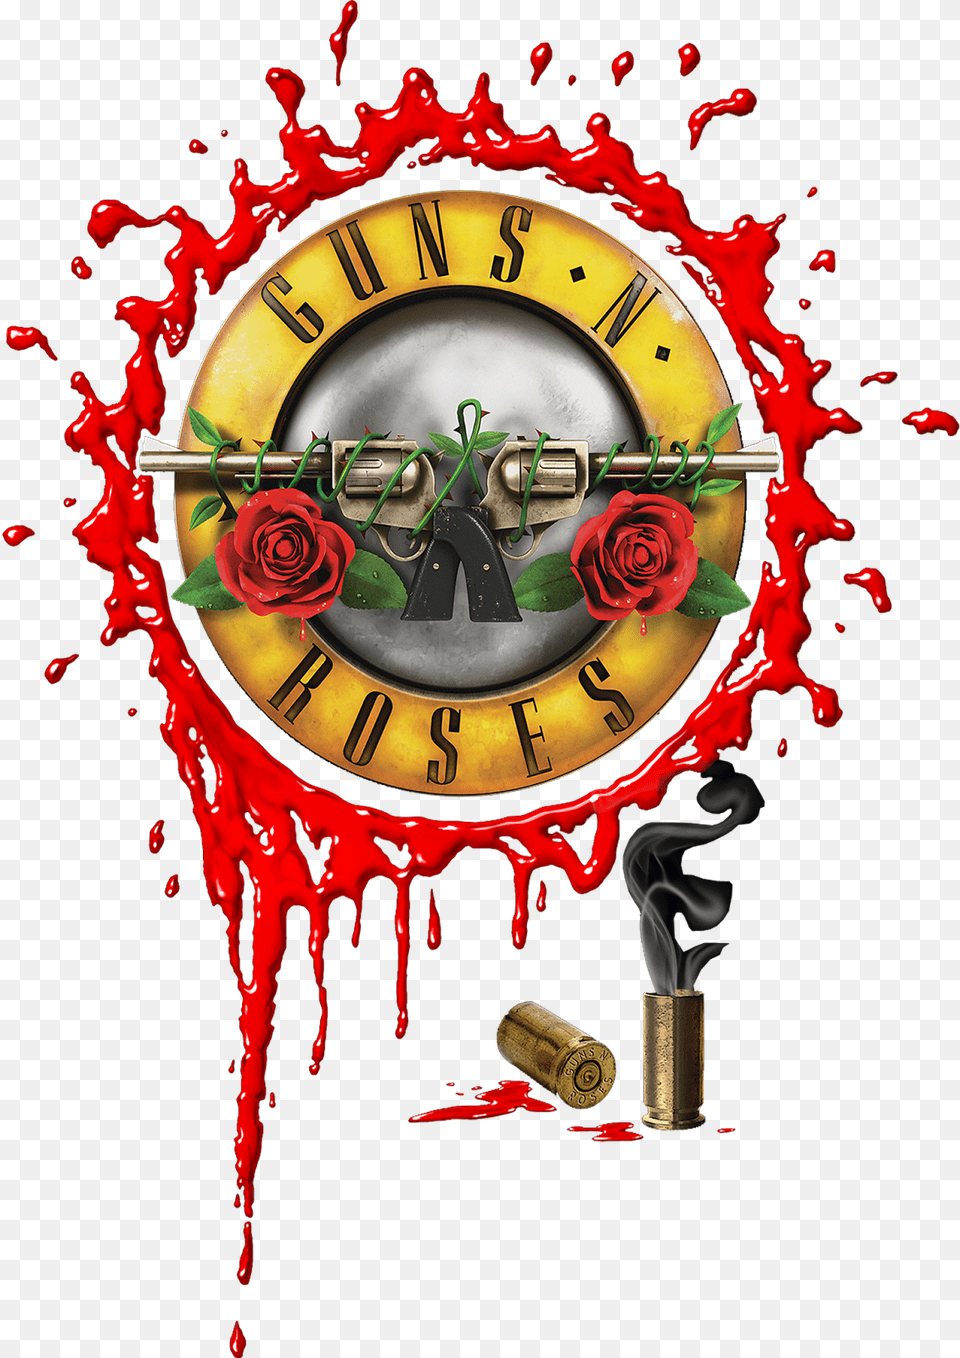 Guns N Roses Logo, Flower, Plant, Rose, Ammunition Png Image